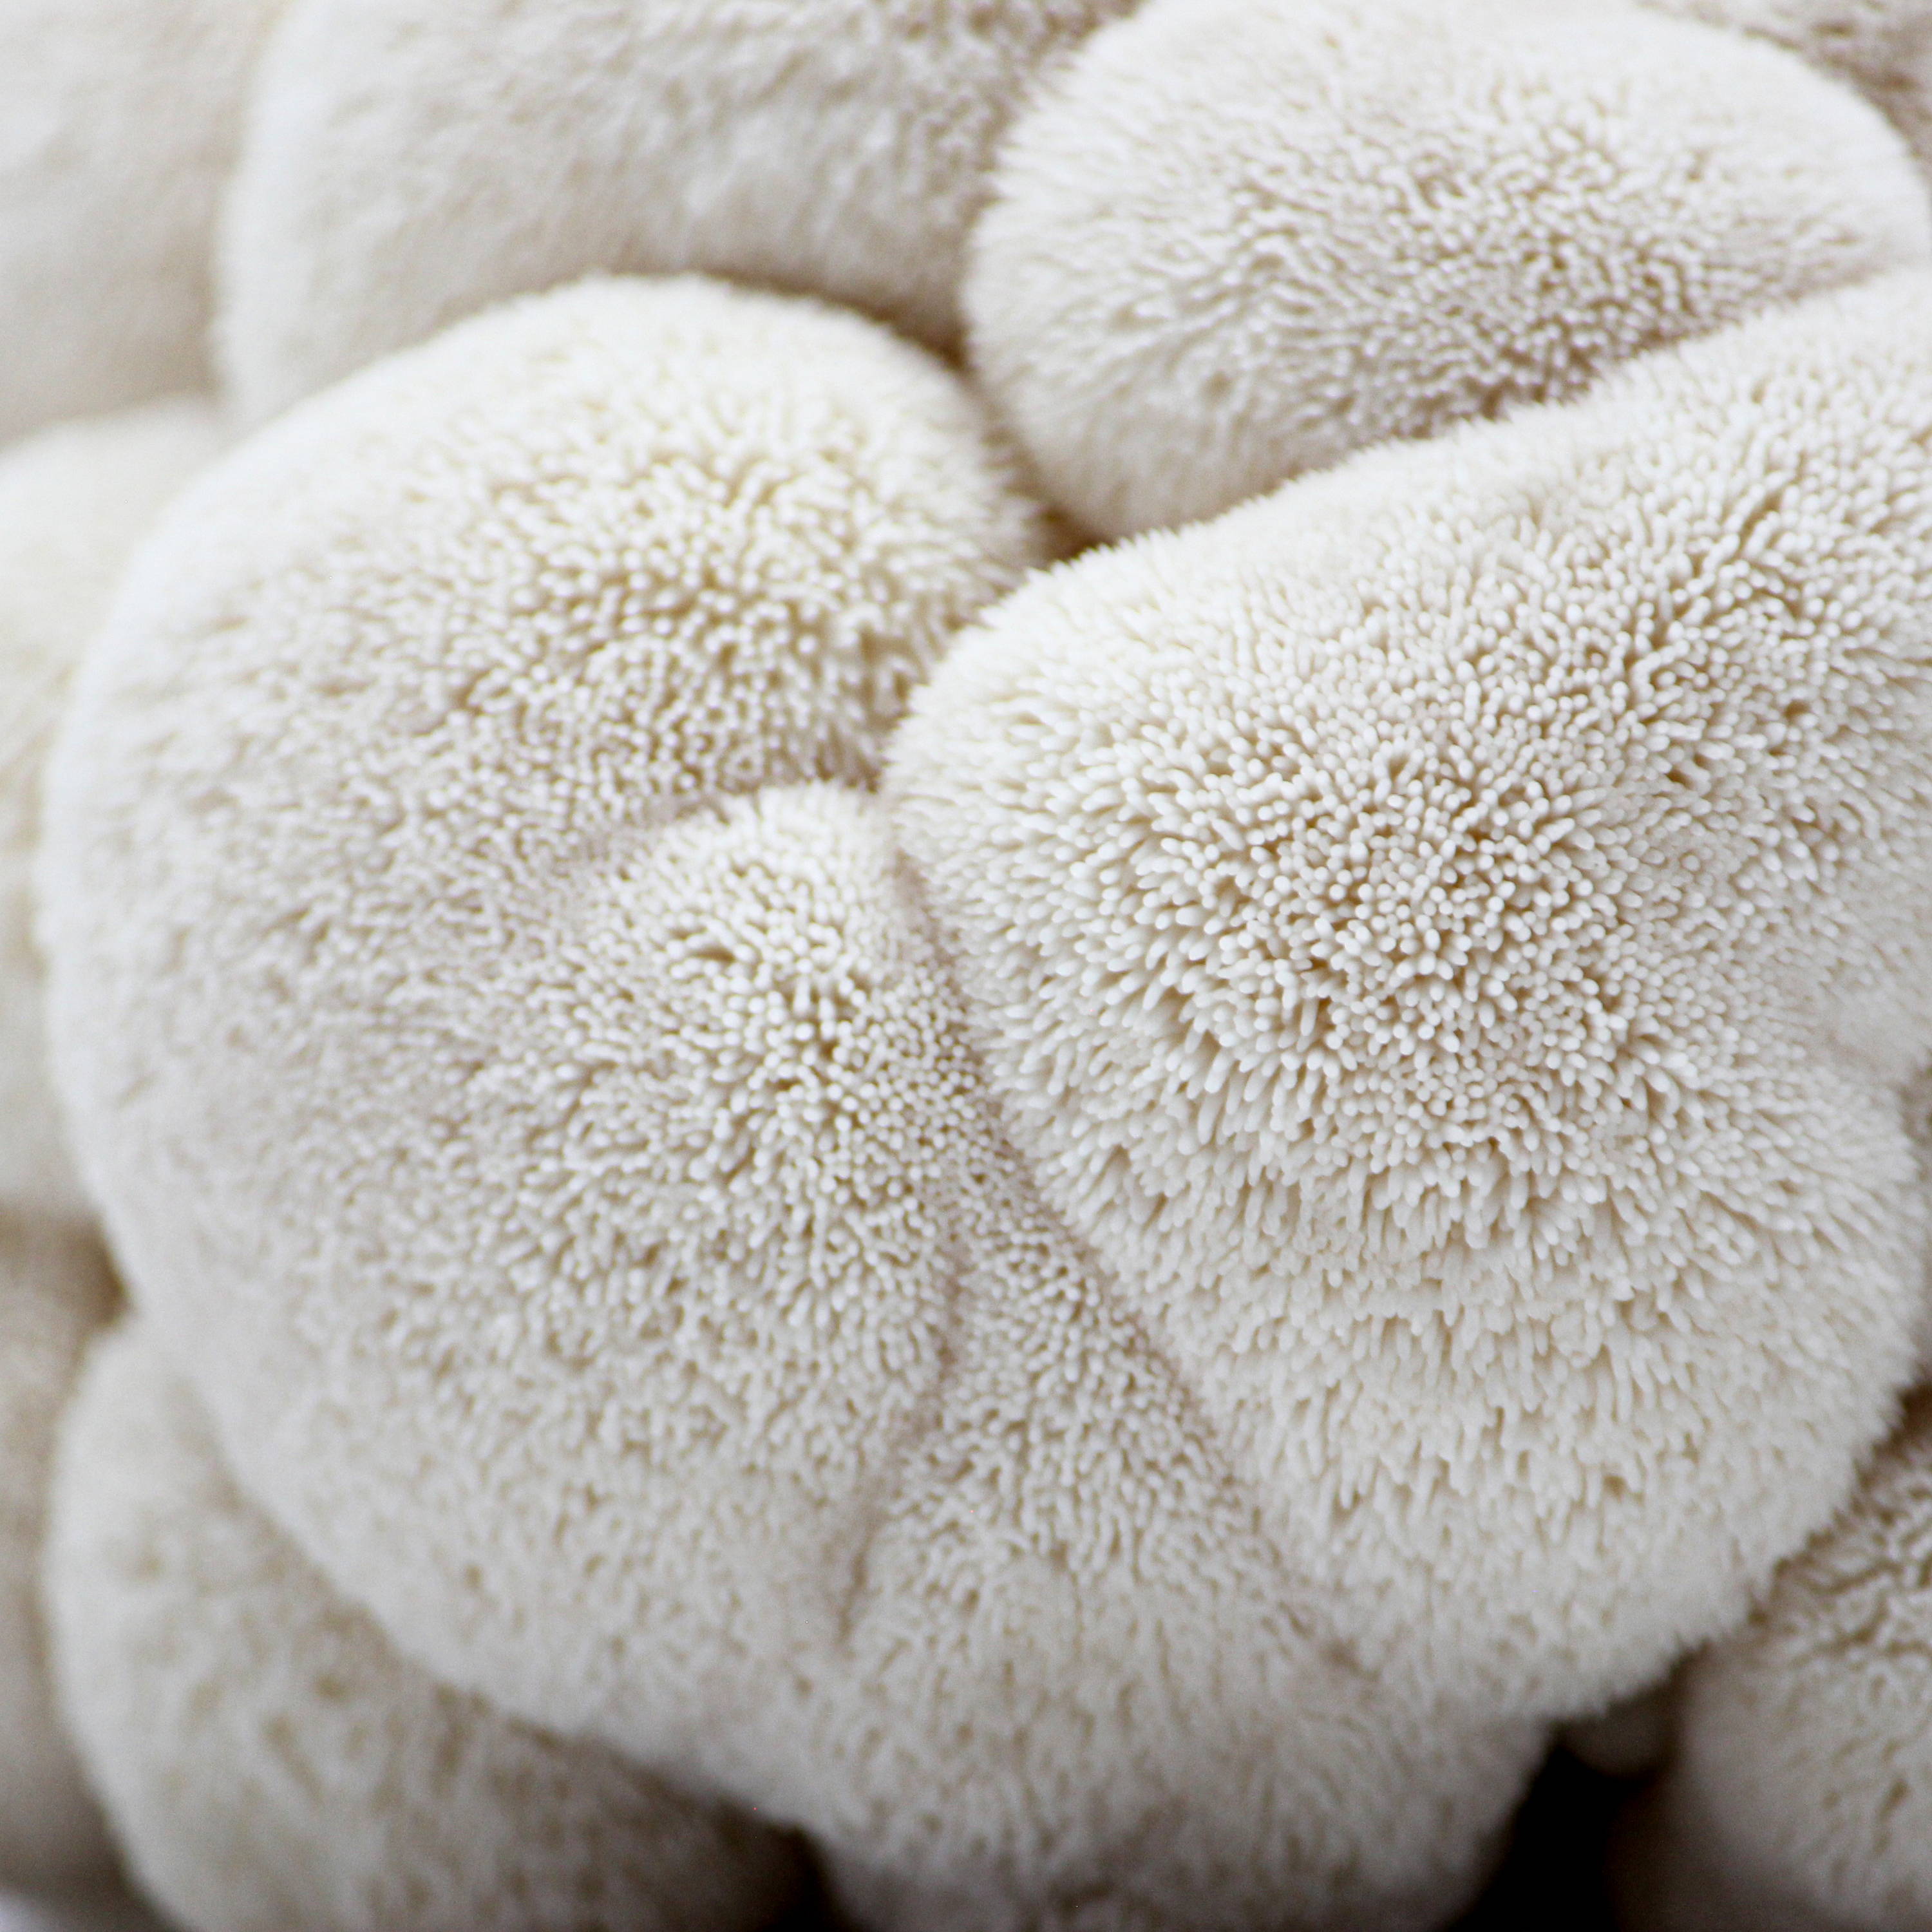 A close-up of a Lion's Mane mushroom 